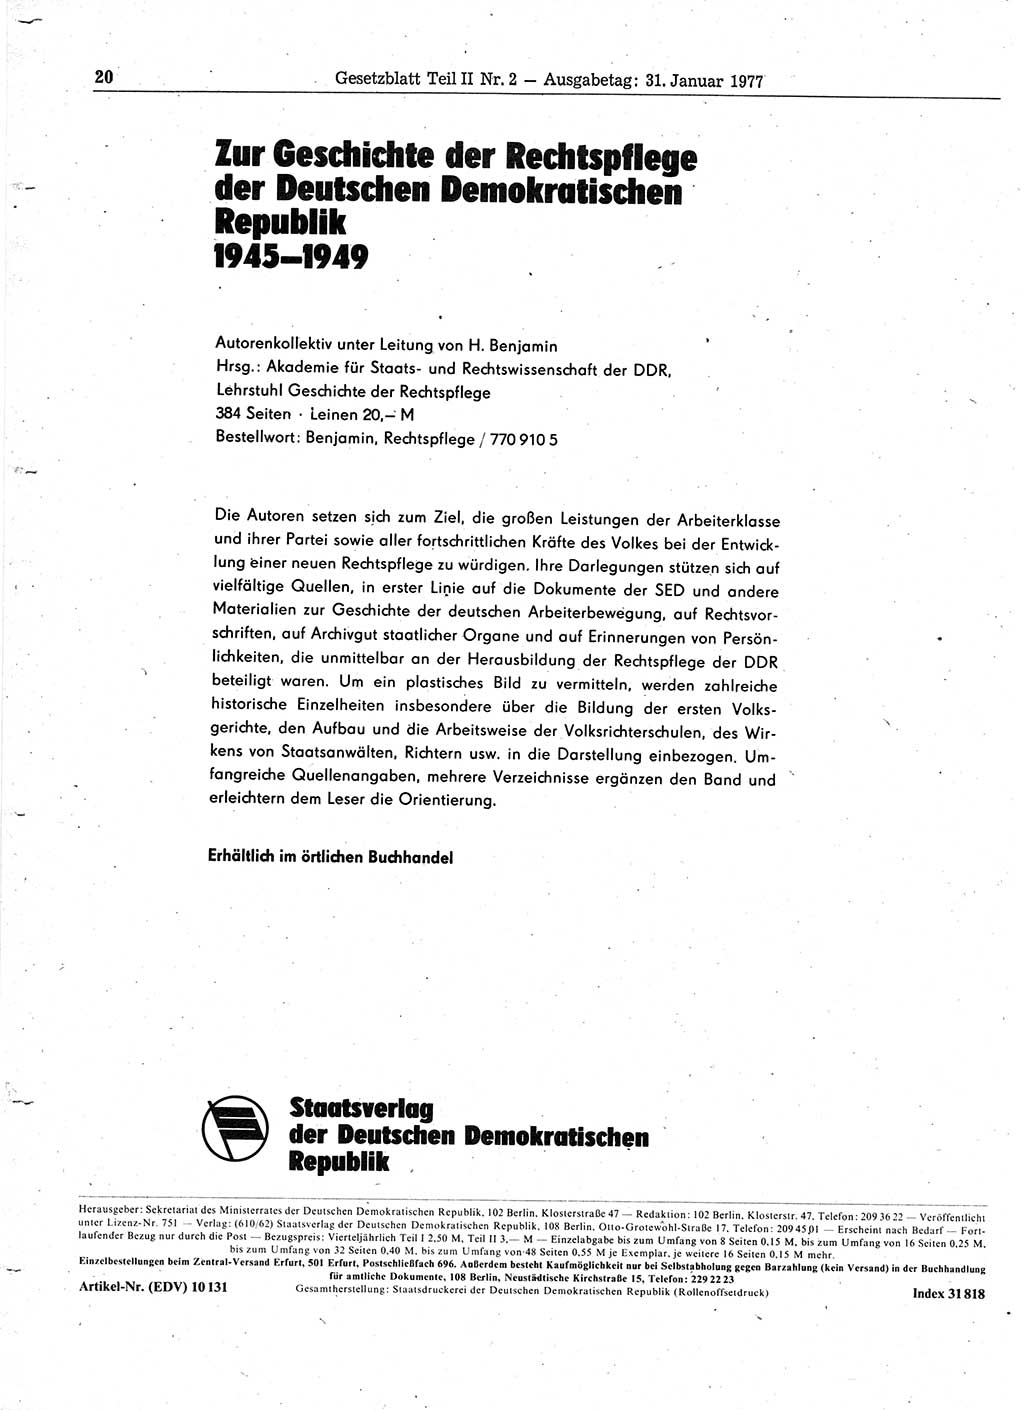 Gesetzblatt (GBl.) der Deutschen Demokratischen Republik (DDR) Teil ⅠⅠ 1977, Seite 20 (GBl. DDR ⅠⅠ 1977, S. 20)